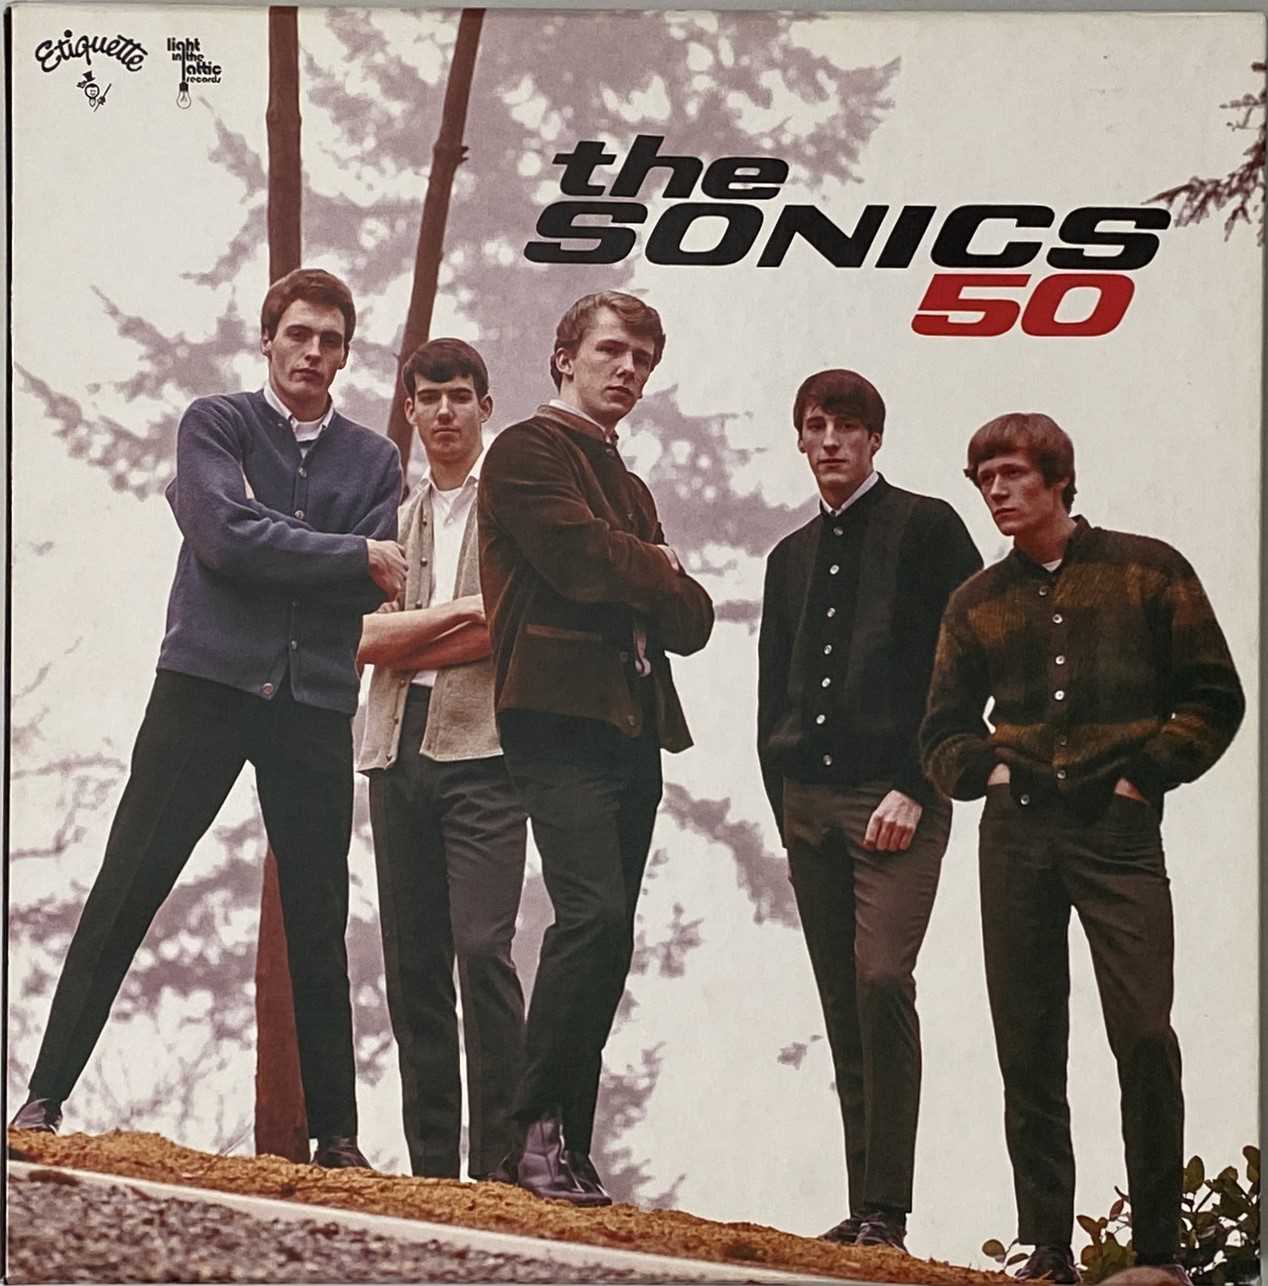 THE SONICS - 50 (2015 LP BOX SET - ETIQUETTE RECORDS LP 2050) - Image 2 of 3